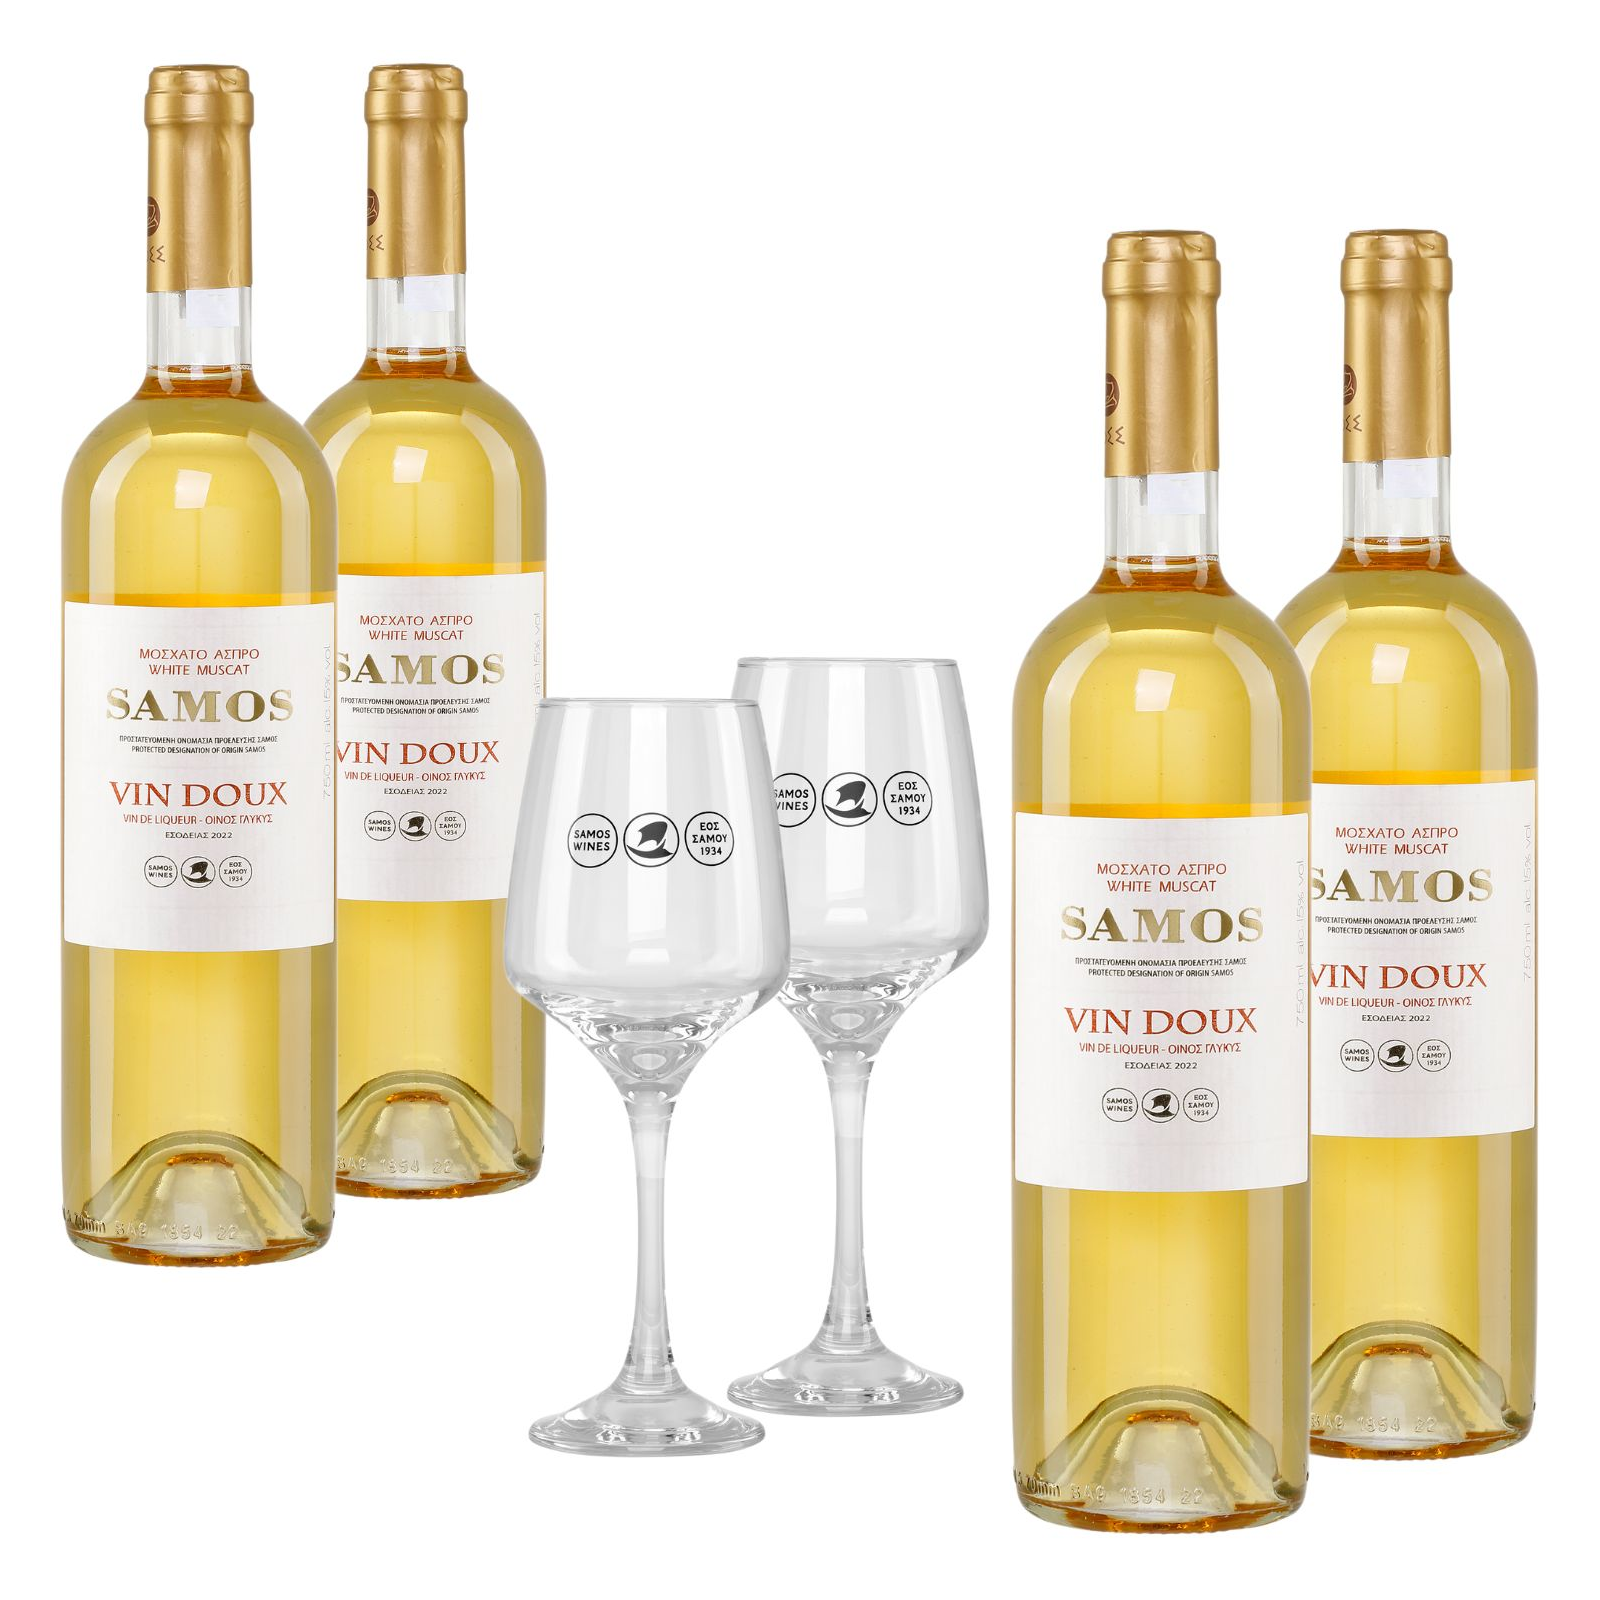 Samos Wein Vin Doux weiß 4x 0,75l + 2 Gläser kaufen, 37,99 €